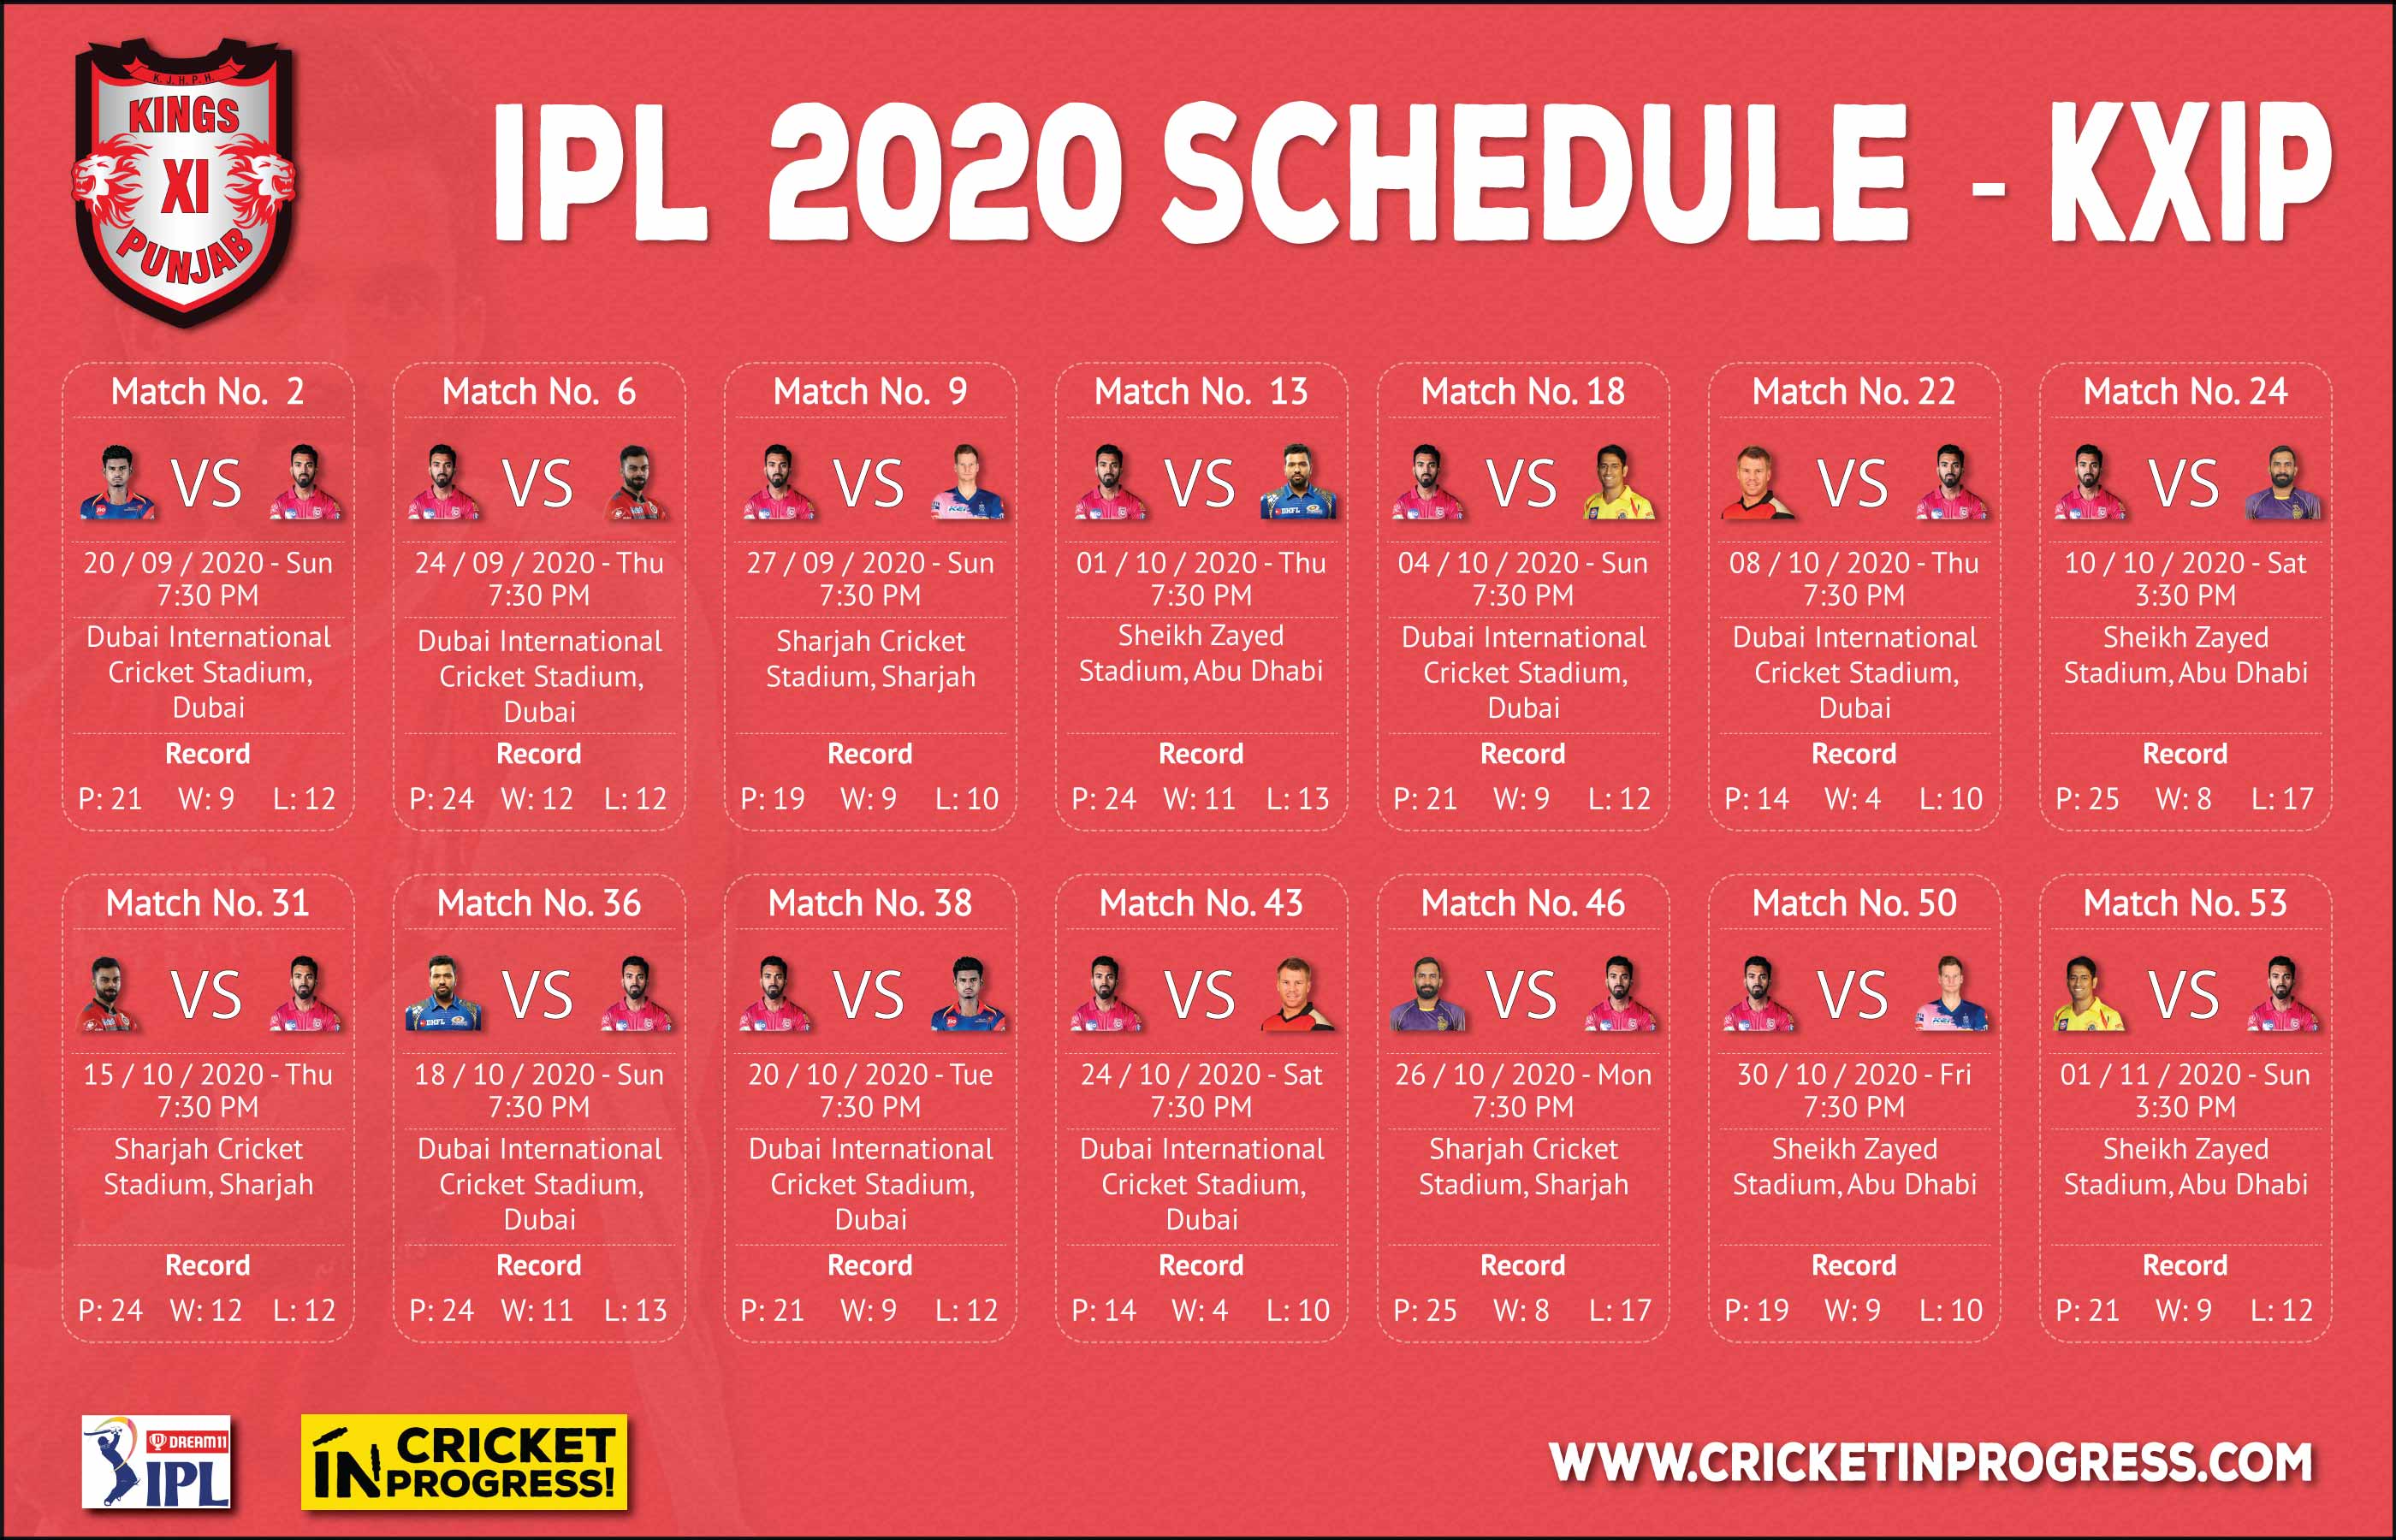 IPL 2020 KXIP Schedule